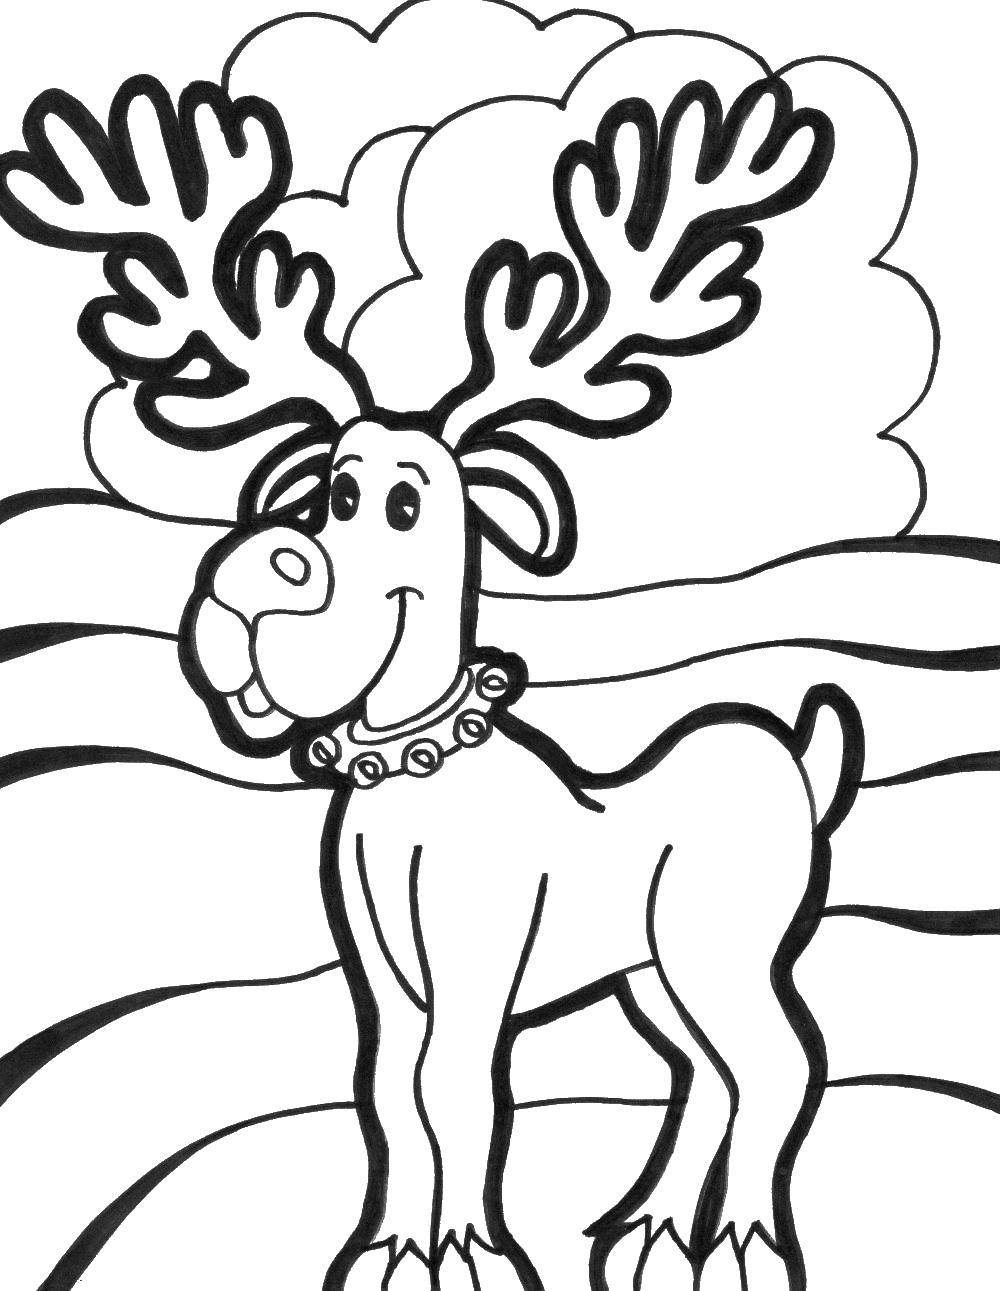 Название: Раскраска Олень рудольф. Категория: рождество. Теги: Рудольф, санта клаус, рога оленя.